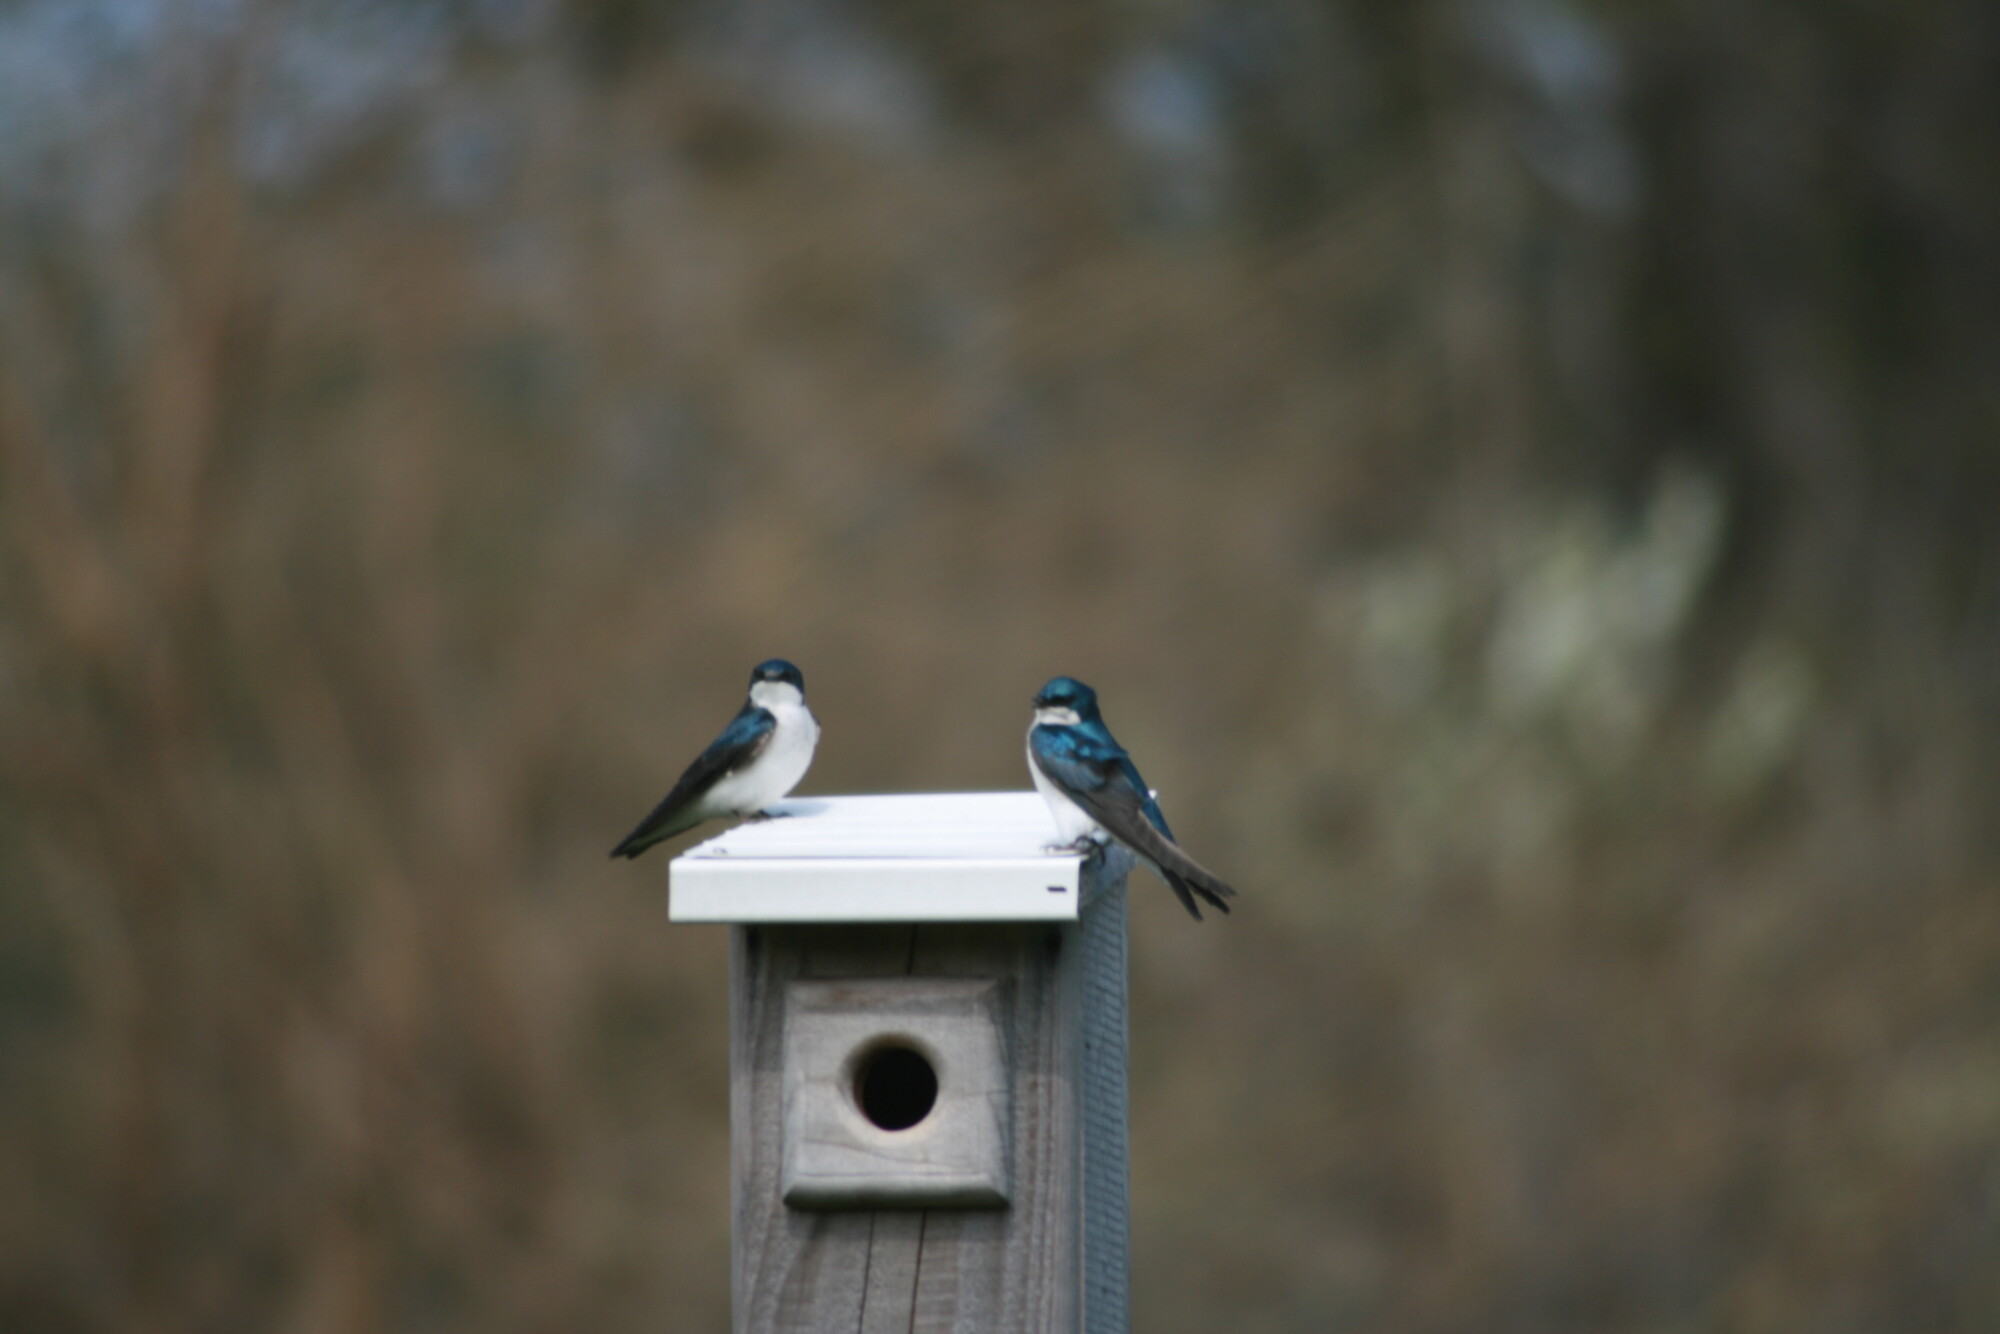 Two birds perch on a birdhouse